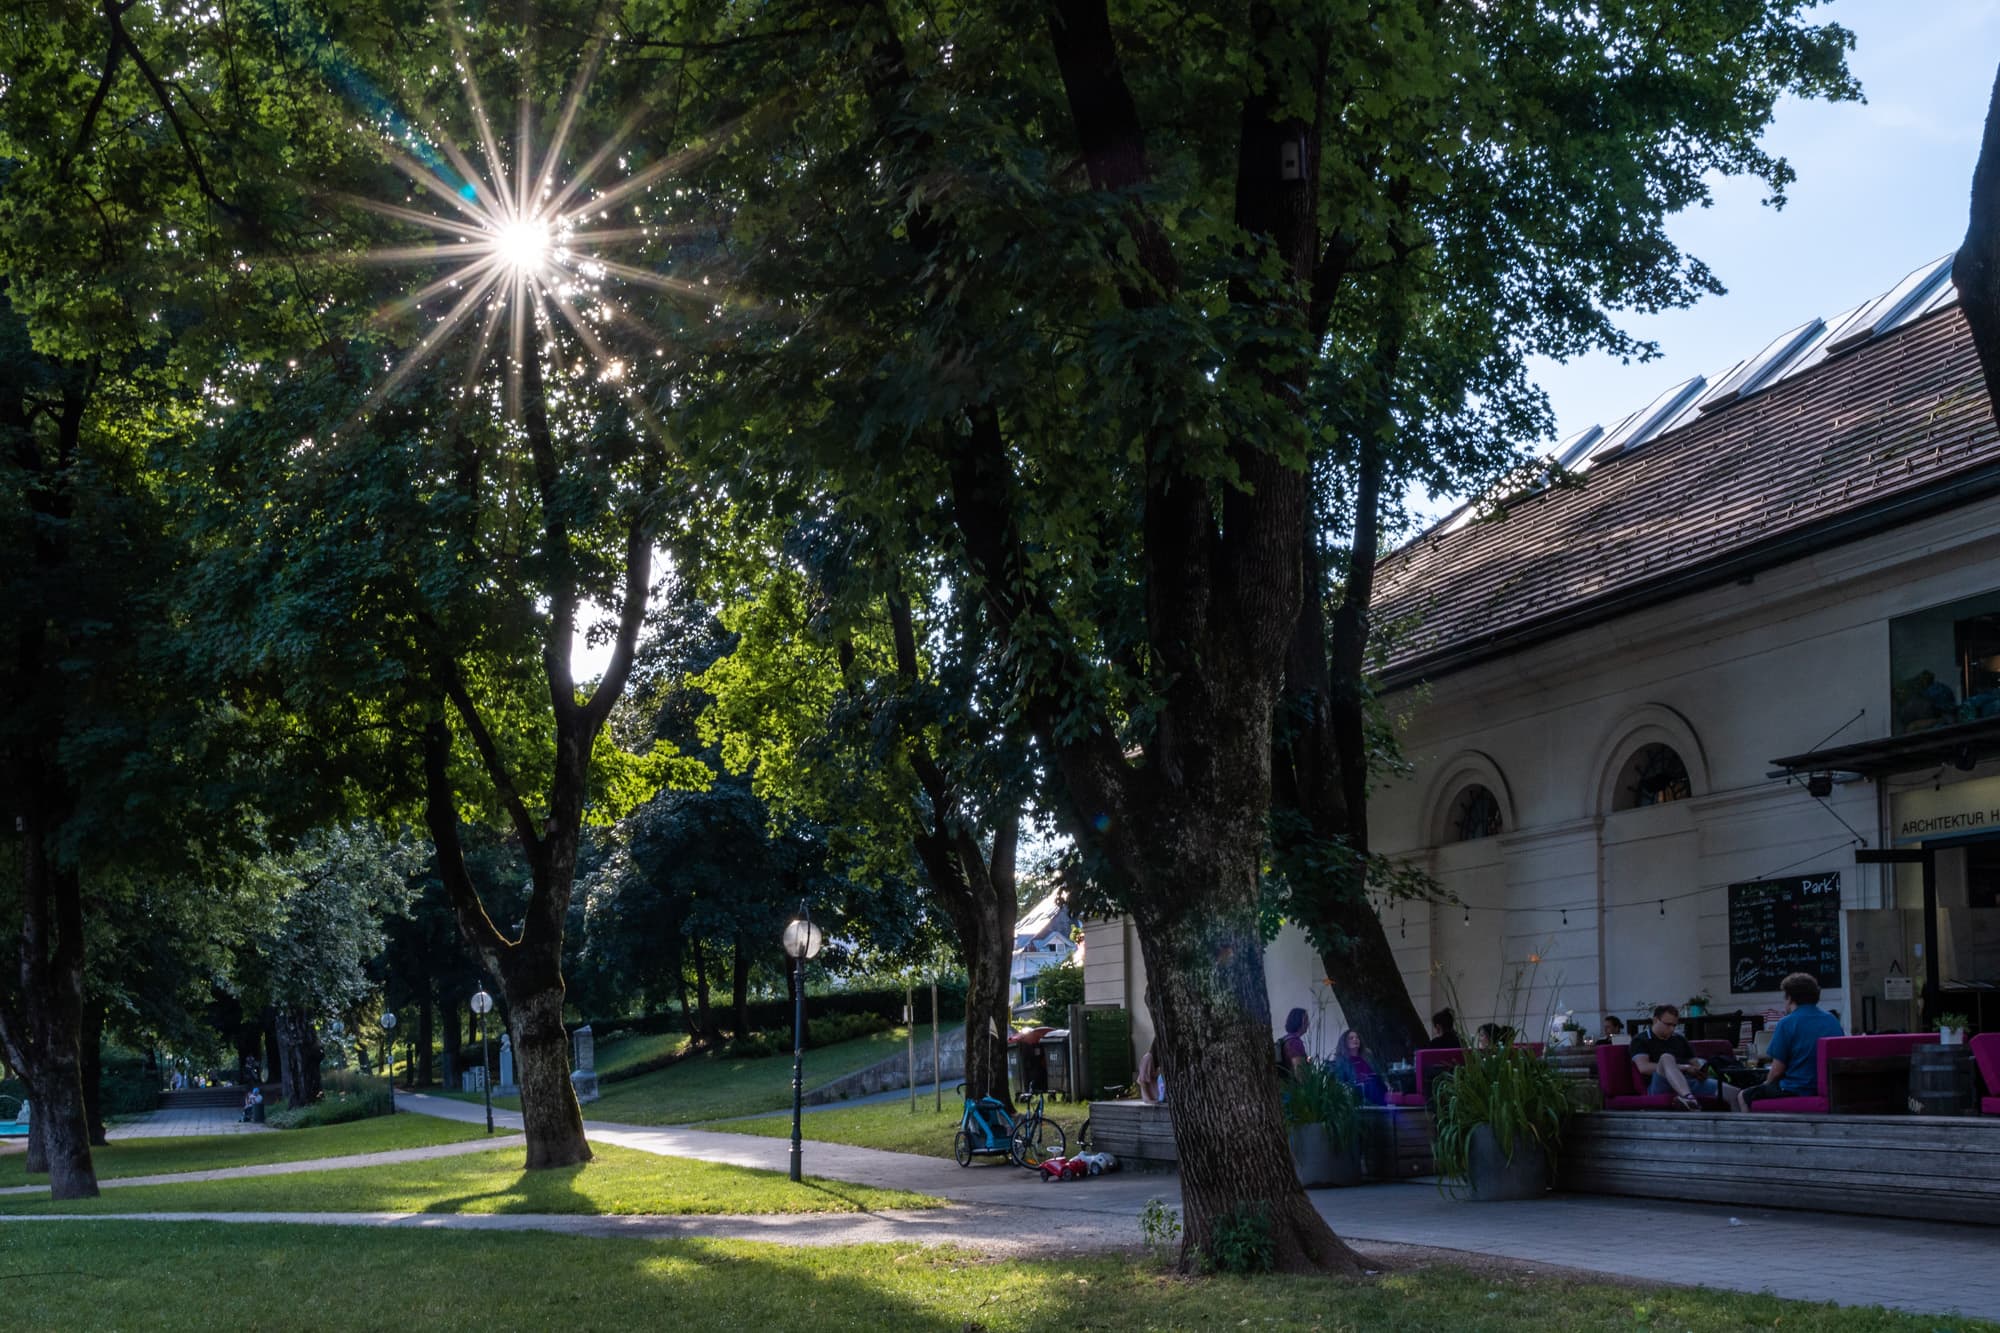 Sommerabend im Parkhaus Göthepark, die Sonne blinzelt durch die grünen Baumkronen, links genießen noch einige Gäste den lauen Sommerabend im Parkhaus Klagenfurt